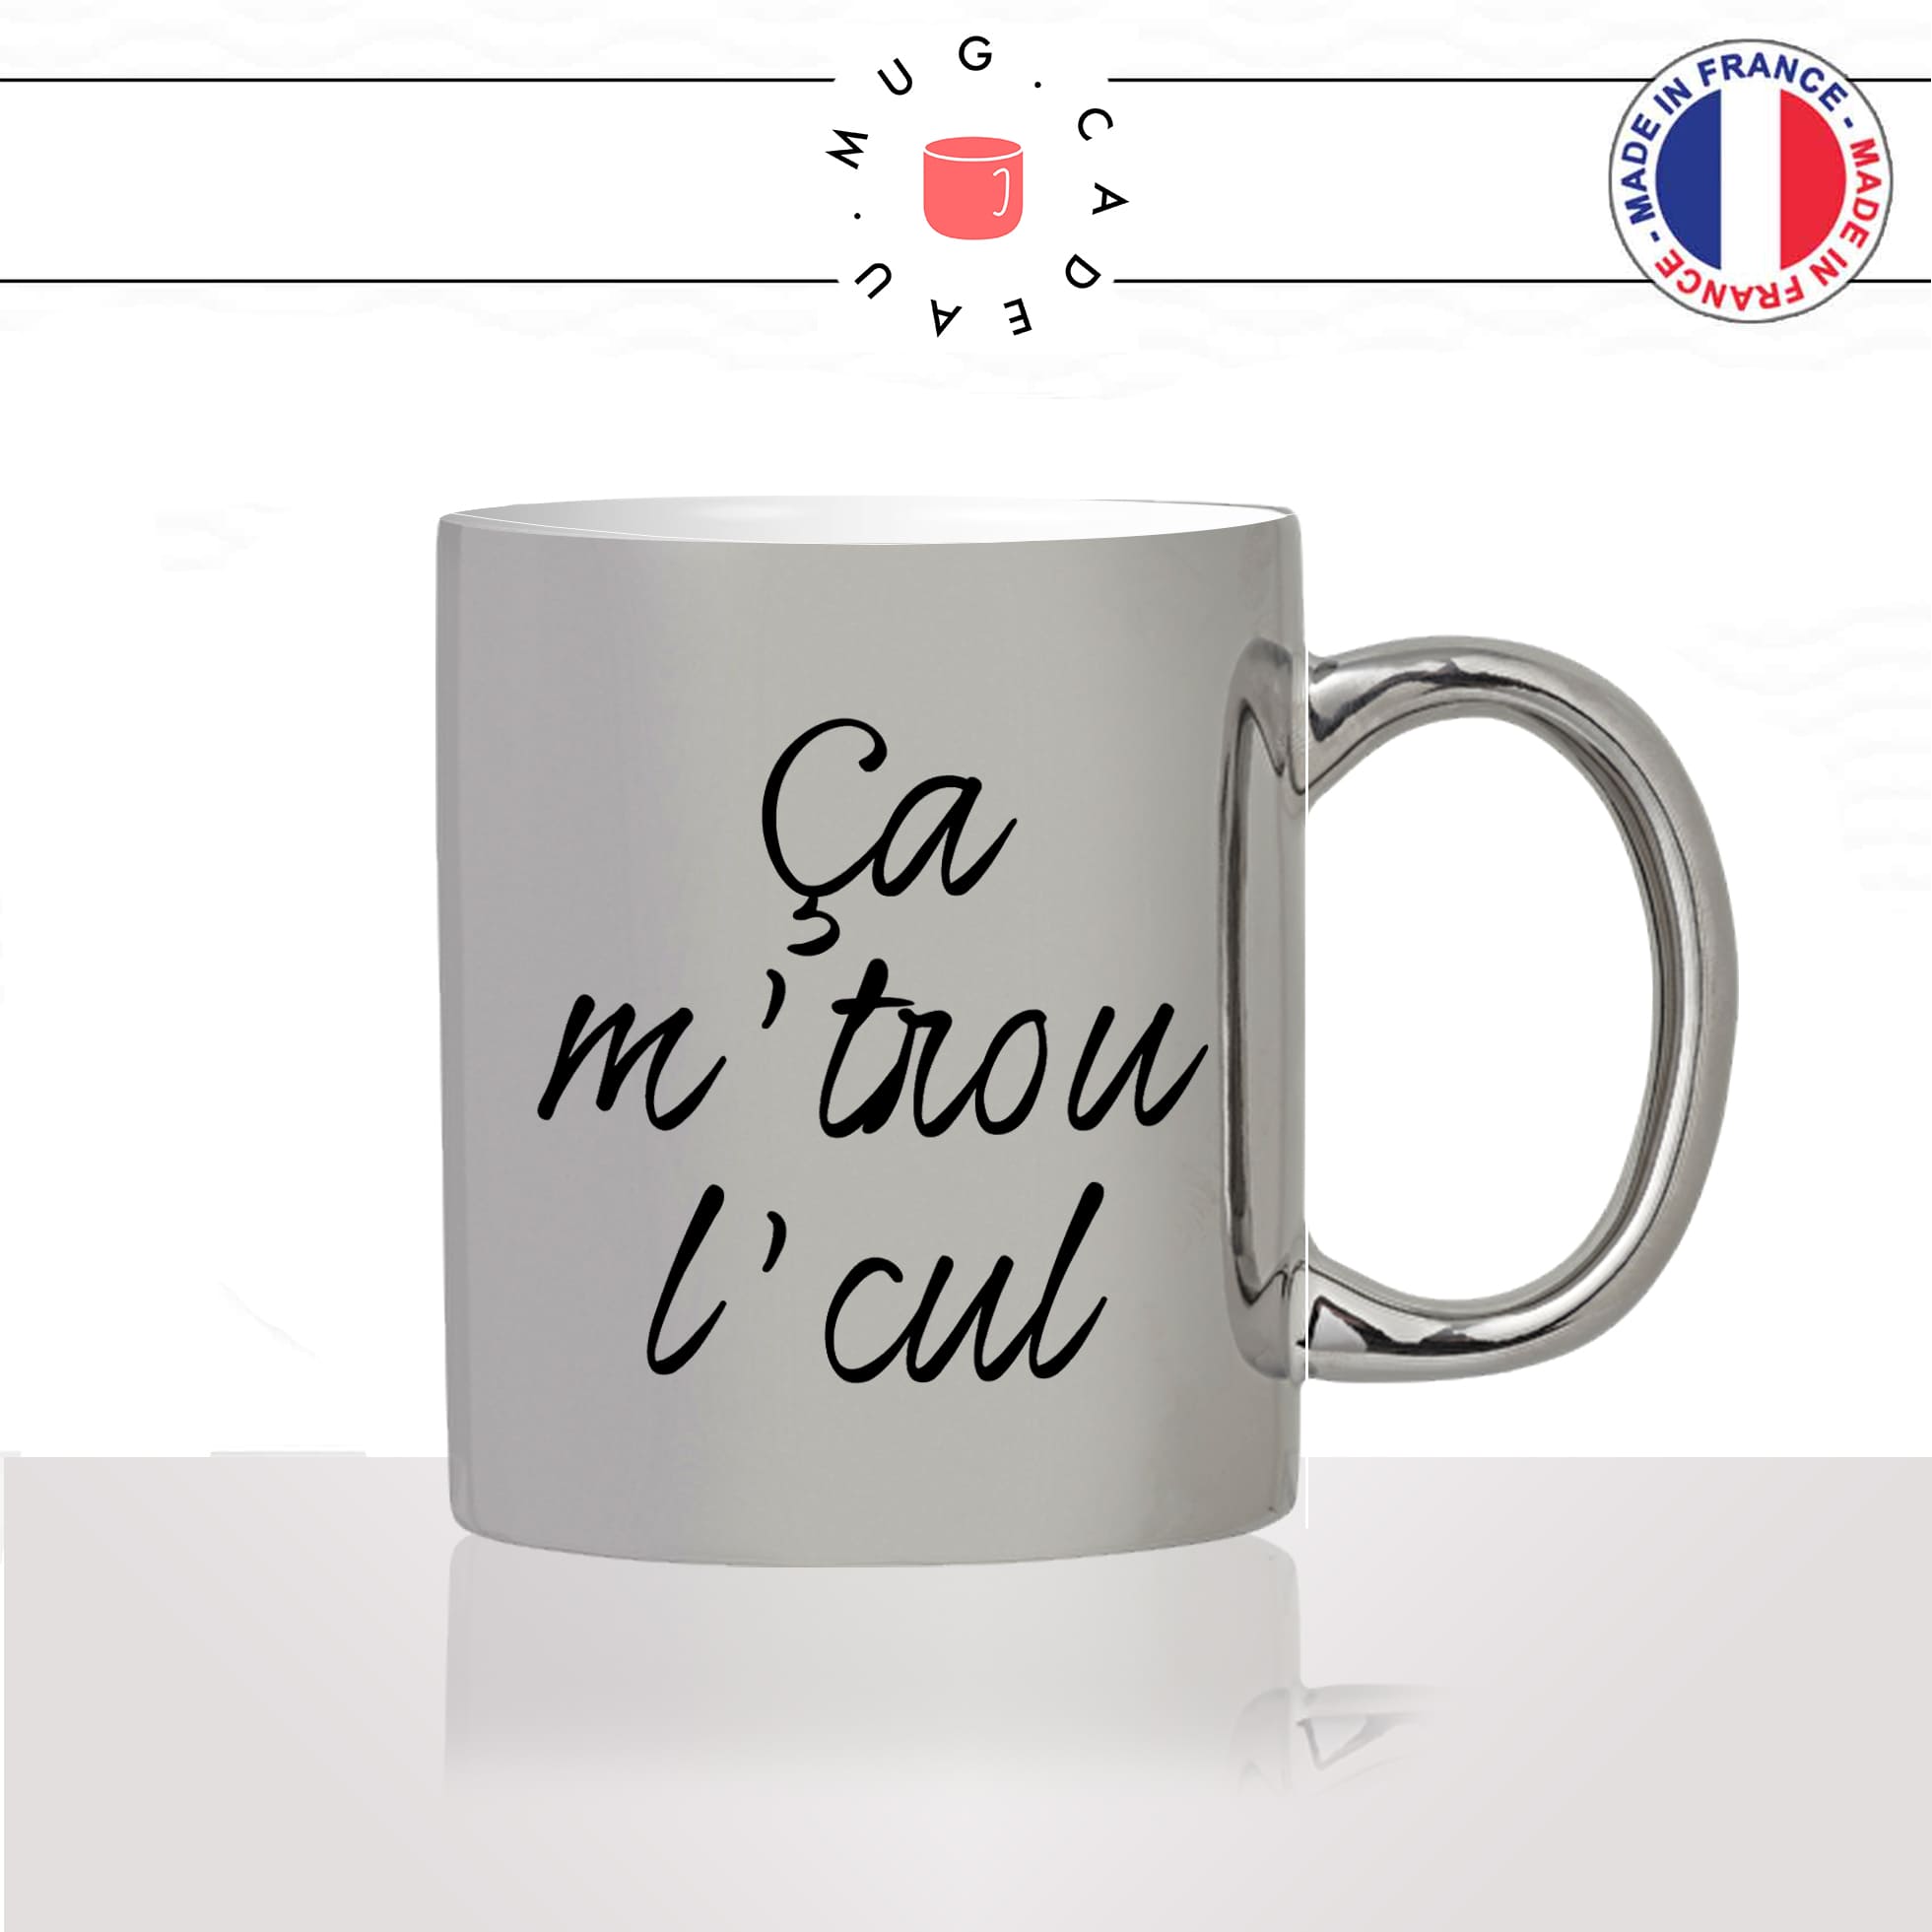 mug-tasse-argenté-argent-gris-silver-ca-me-trou-le-cul-expression-francaise-homme-femme-humour-fun-cool-idée-cadeau-original-personnalisé2